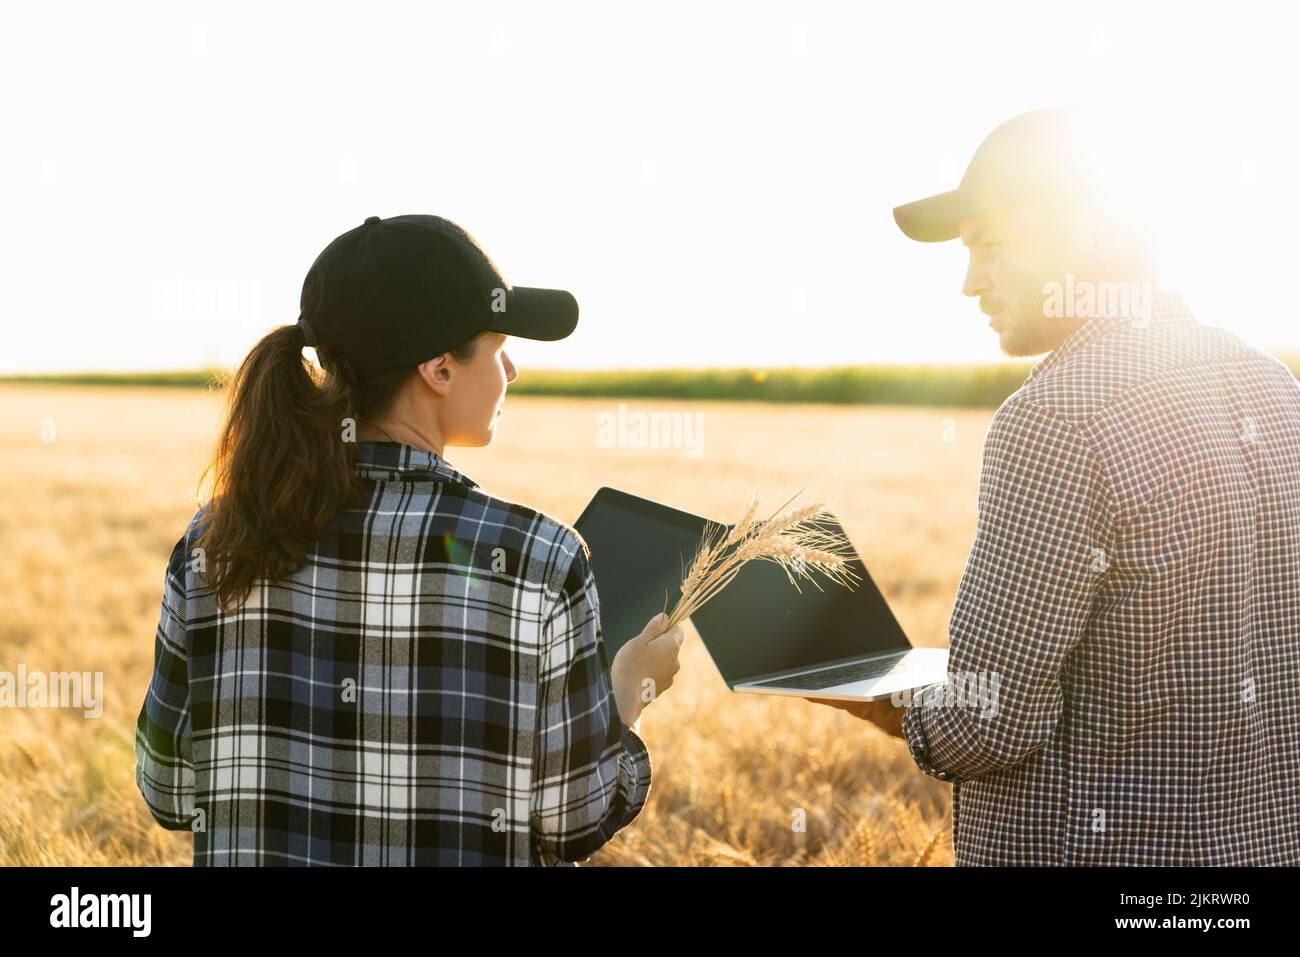 Un par de agricultores examina el campo de los cereales y envía datos a la nube desde la tableta digital y el portátil. Agricultura inteligente Foto de stock